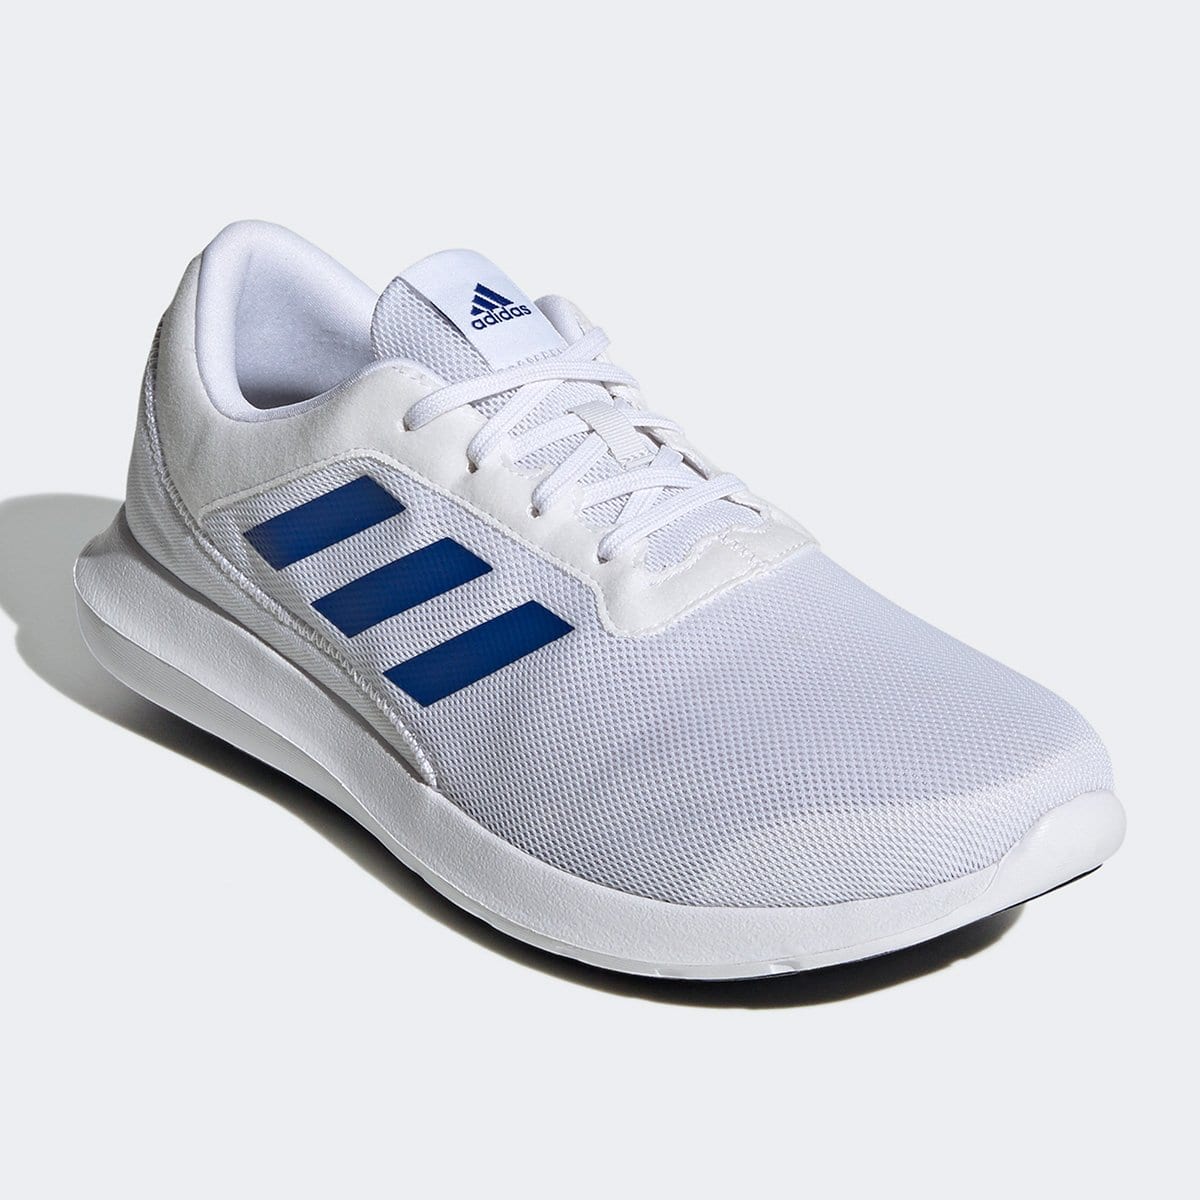 Tênis Adidas Coreracer Masculino – Branco e Azul Royal